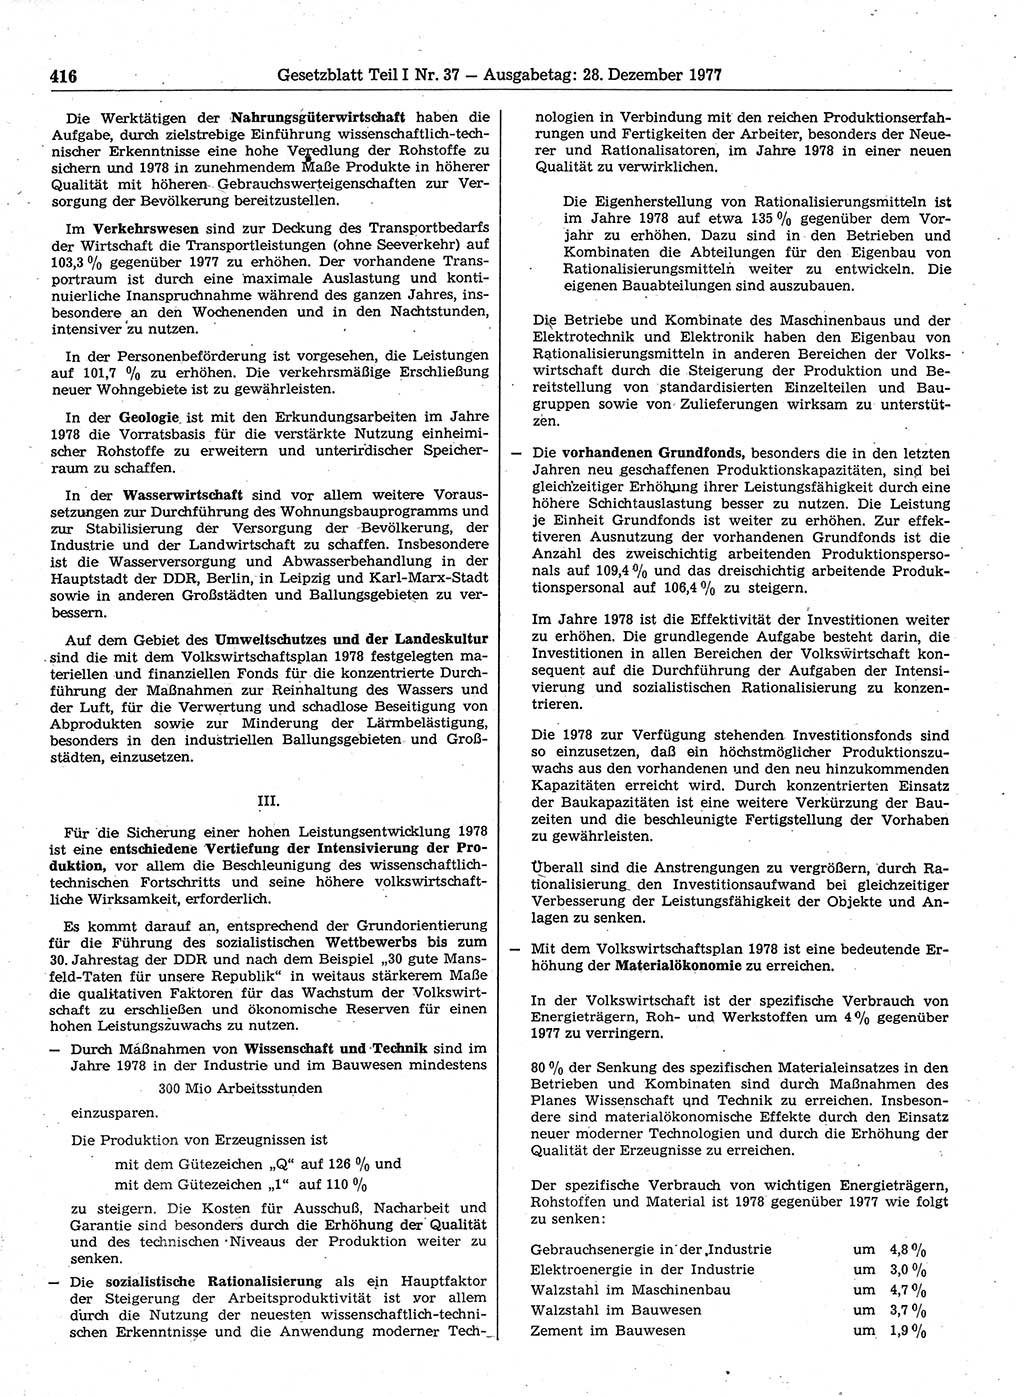 Gesetzblatt (GBl.) der Deutschen Demokratischen Republik (DDR) Teil Ⅰ 1977, Seite 416 (GBl. DDR Ⅰ 1977, S. 416)